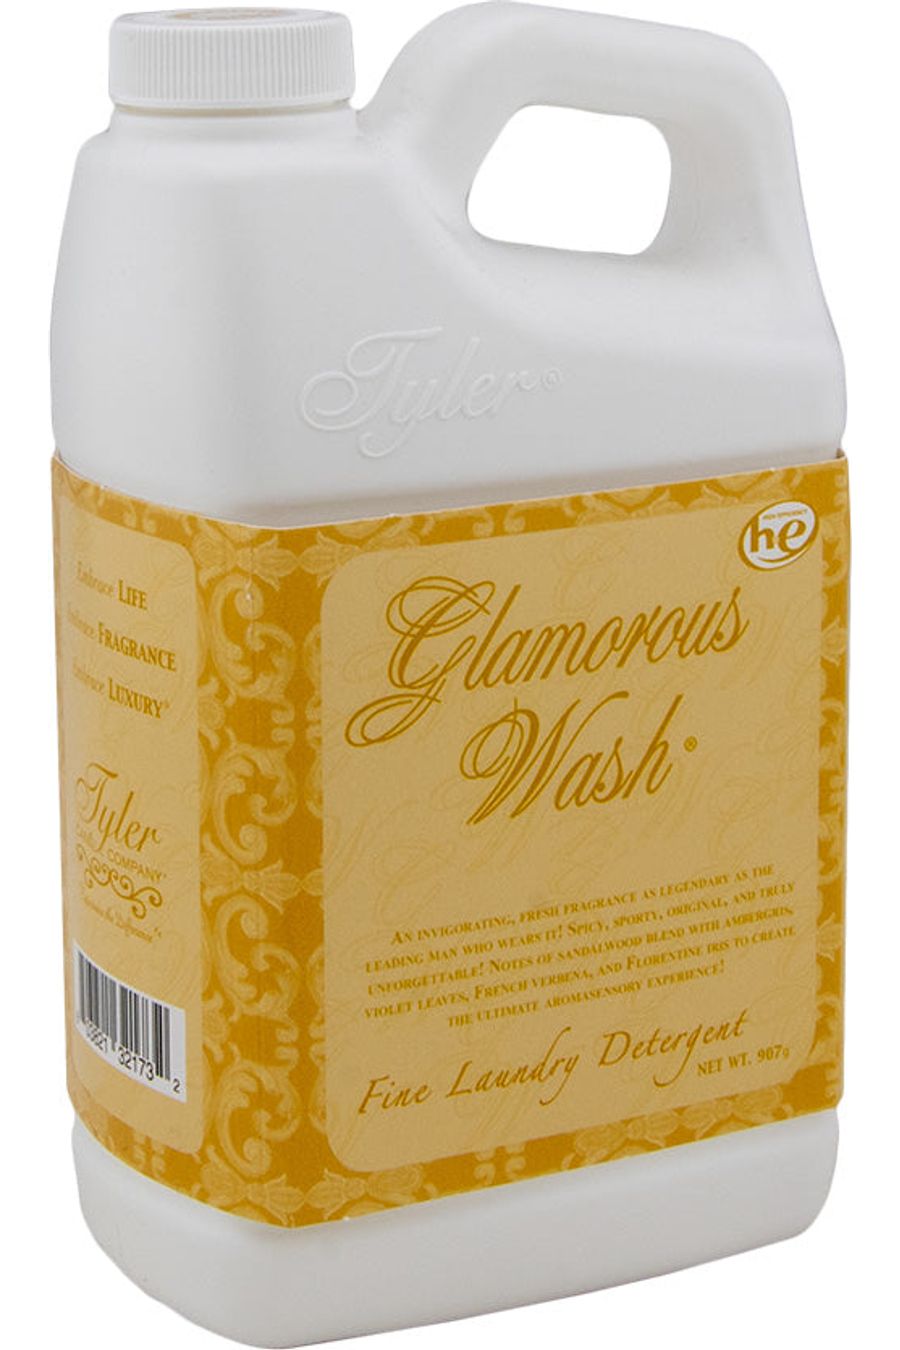 GLAMOROUS WASH (32oz)